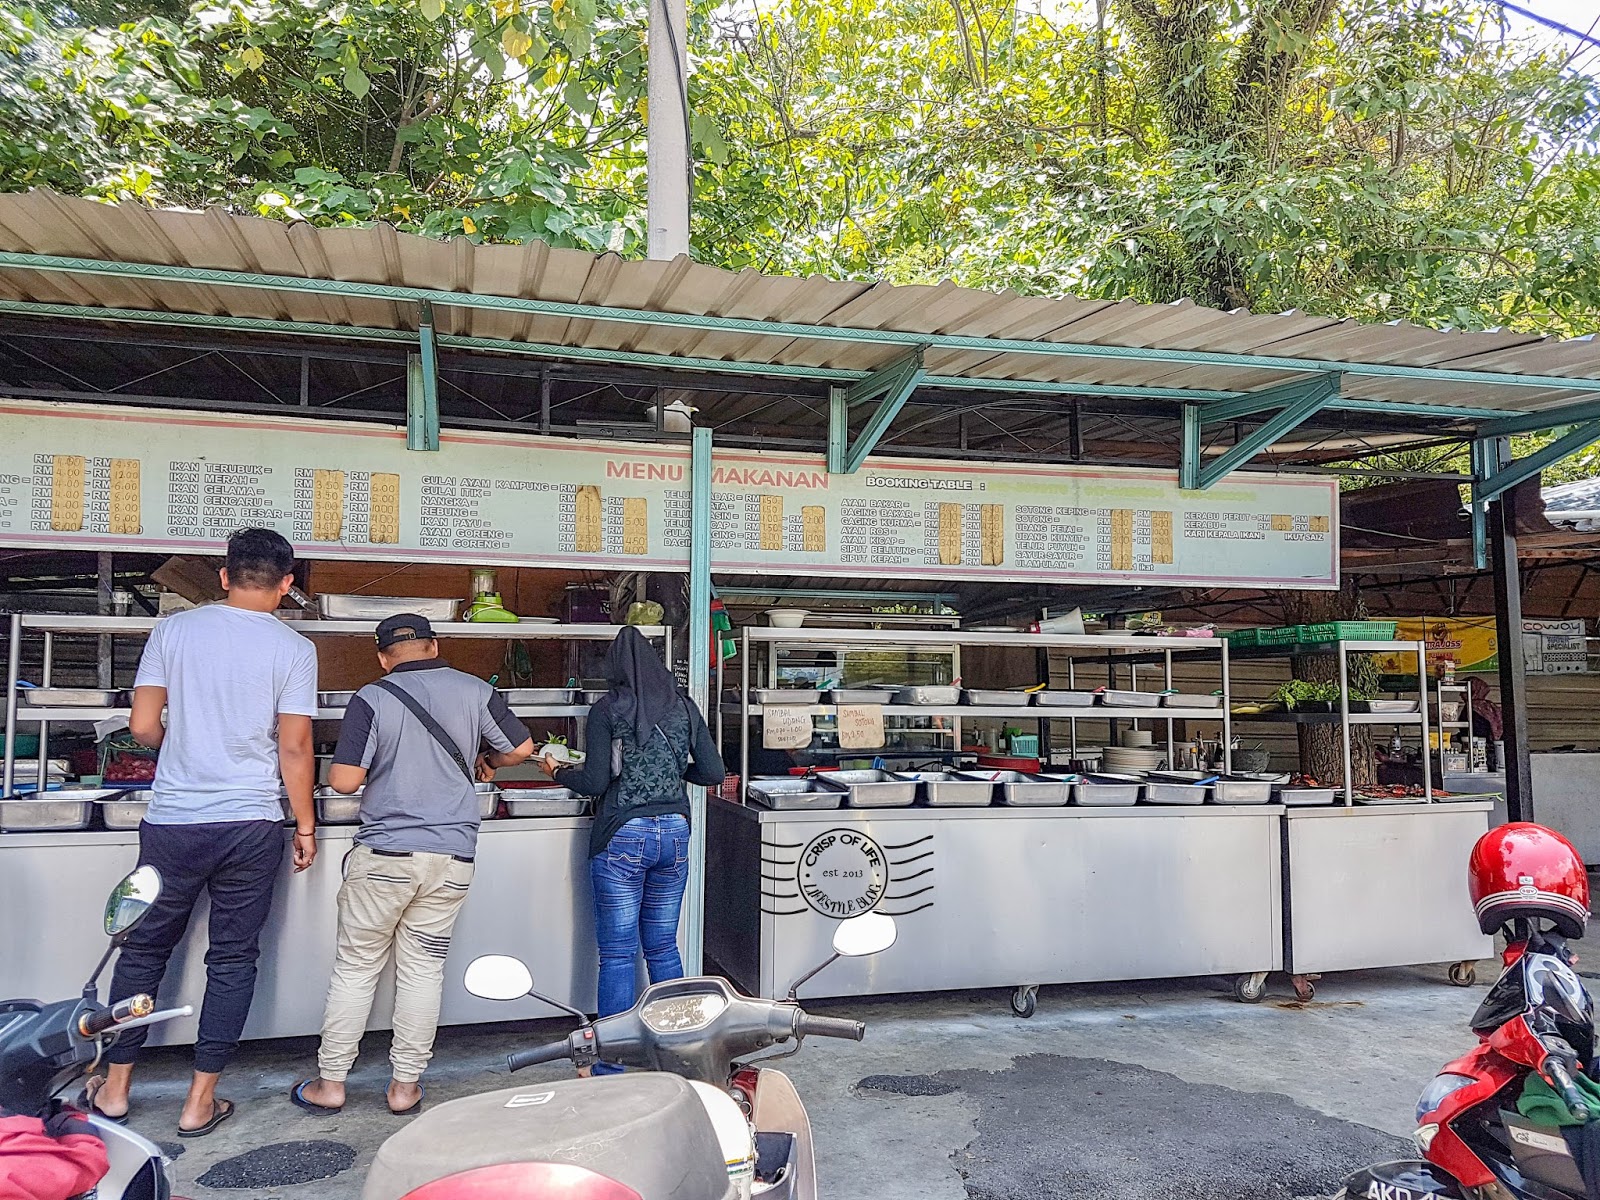 Nasi Campur Tepi Jalan near Masjid Bandar Bayan Baru @ Bayan Lepas, Penang